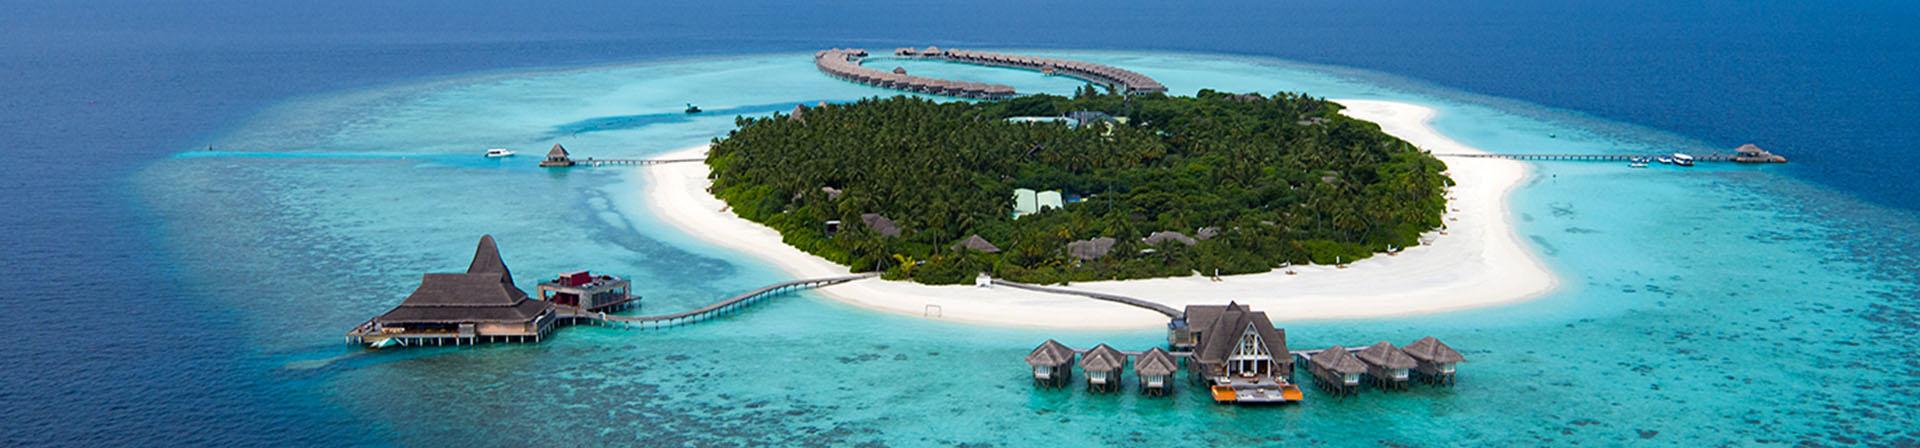 Malediven - Das Inselparadies im Indischen Ozean